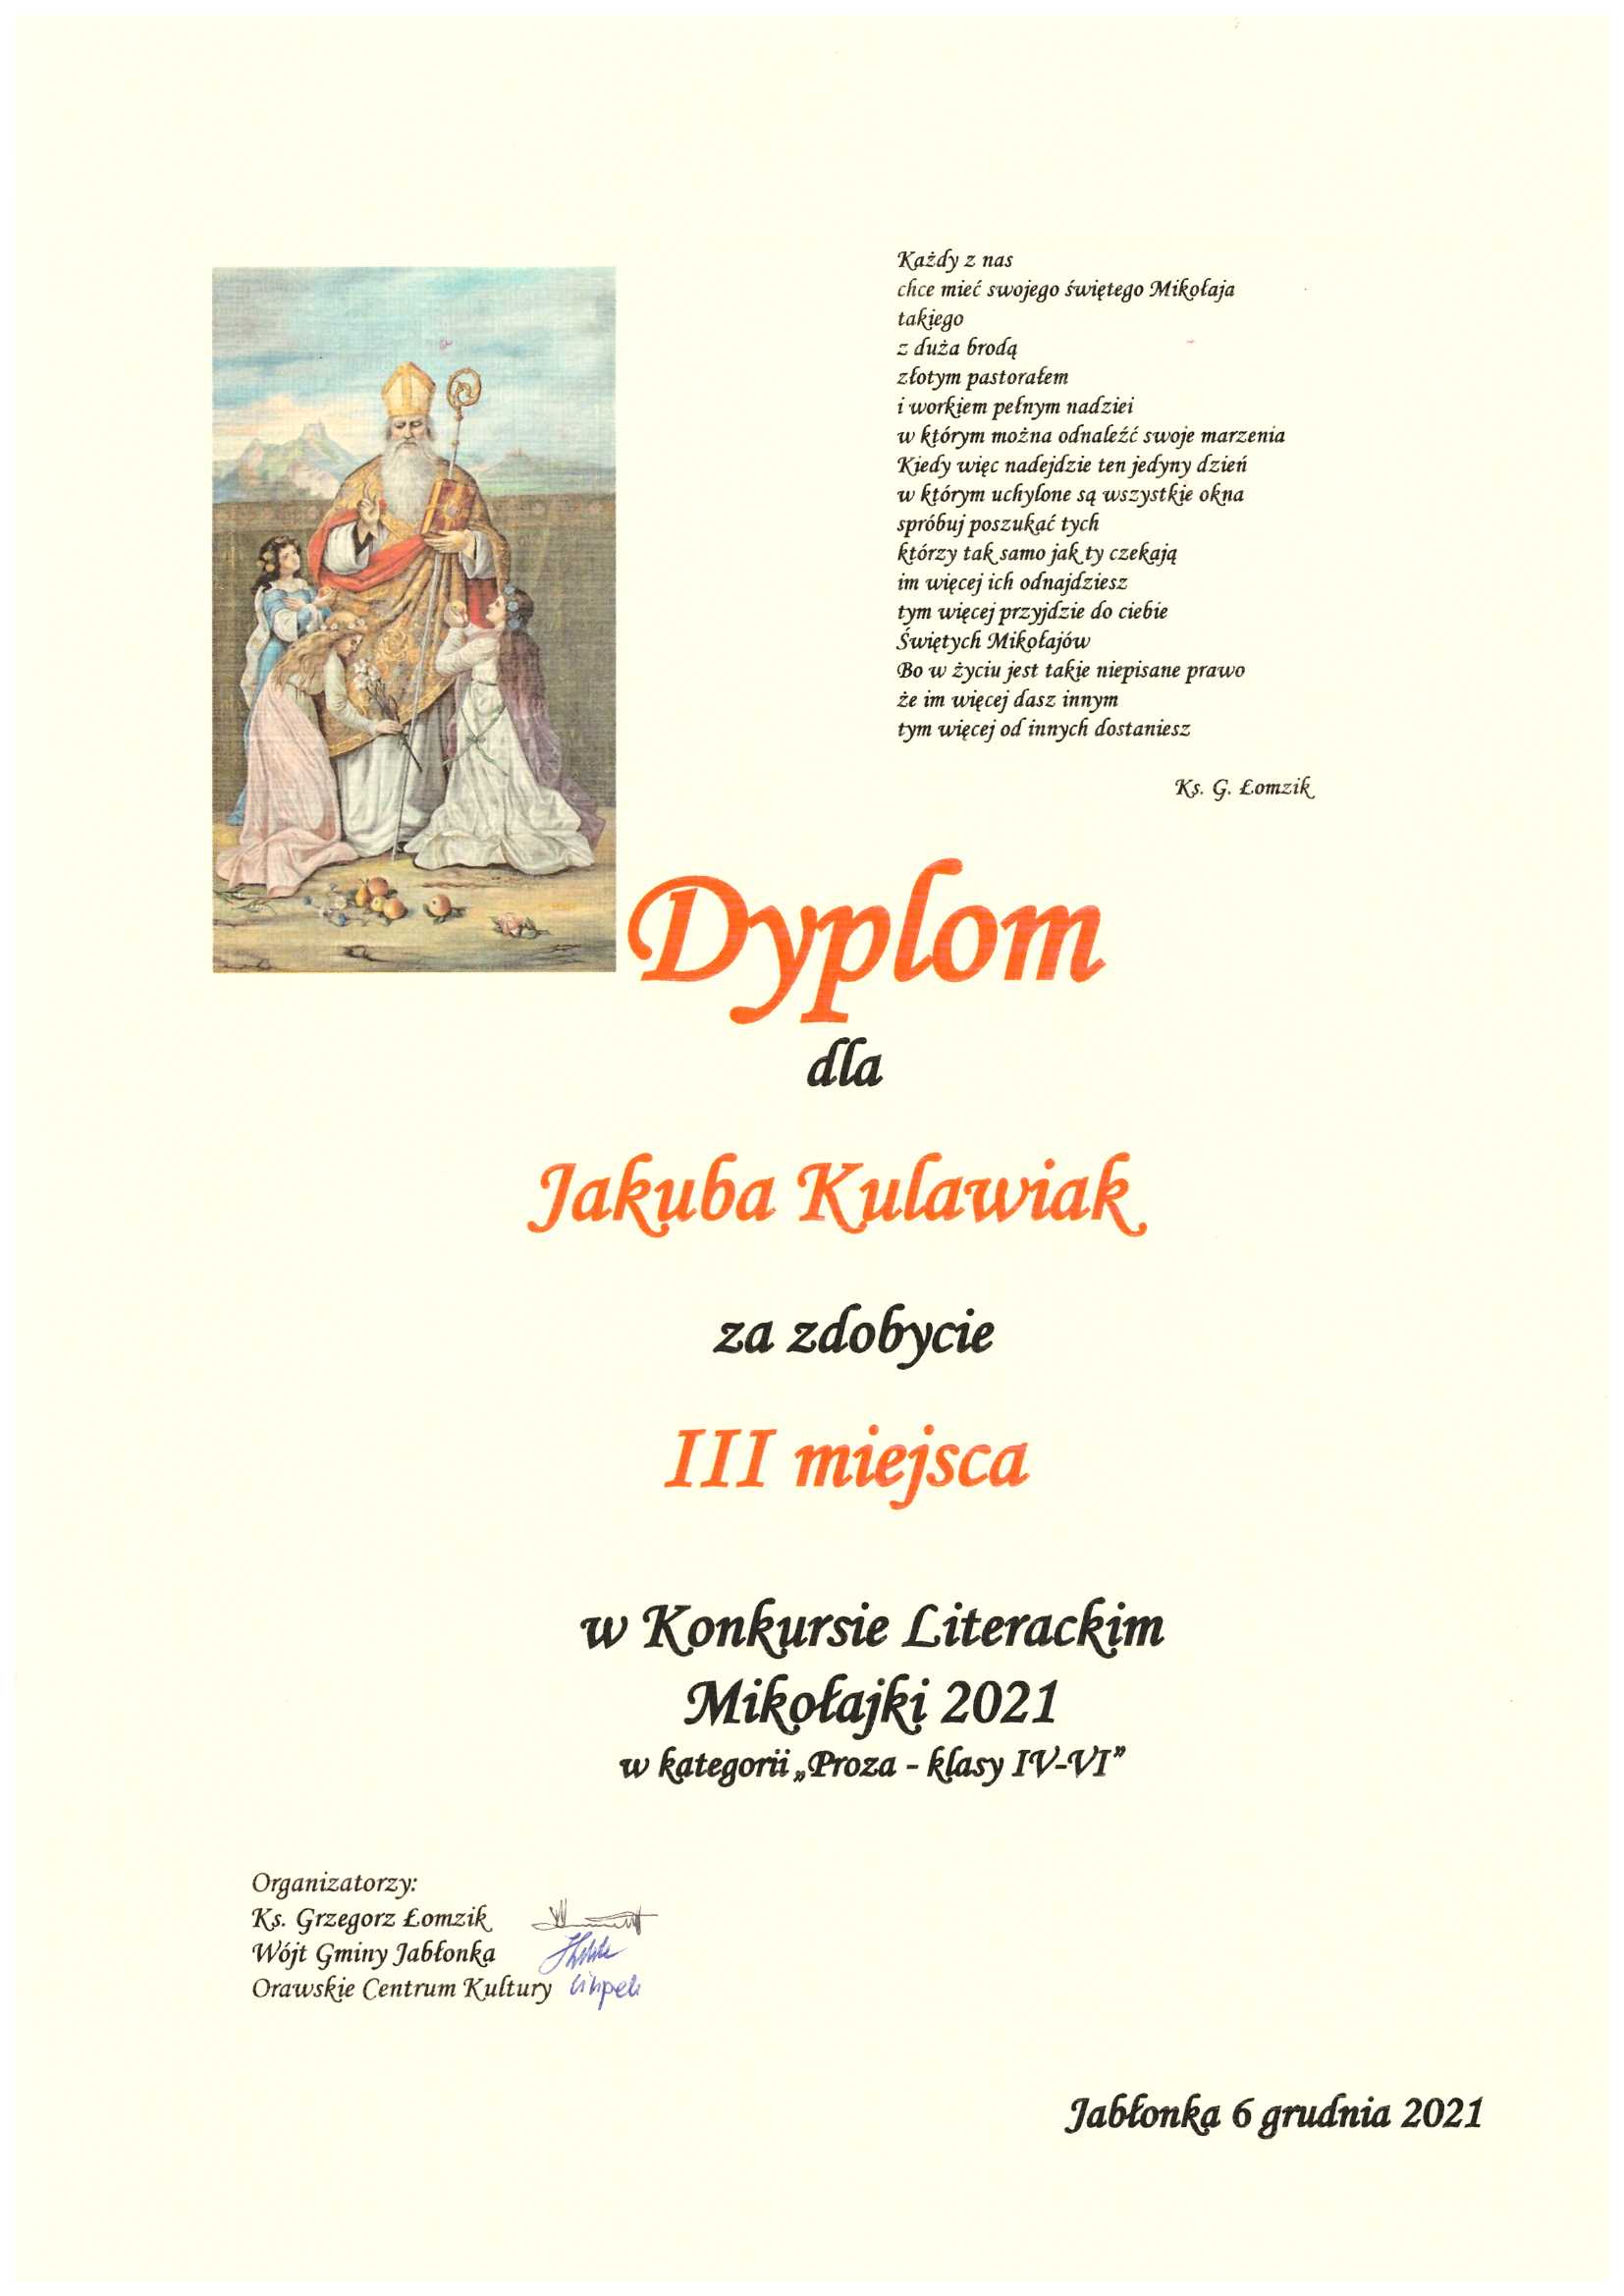 zdjęcie przedstawia dyplom dla Jakuba Kulawiak za III miejsce w konkursie literackim Mikołajki 2021 kategoria proza klasy IV-VI